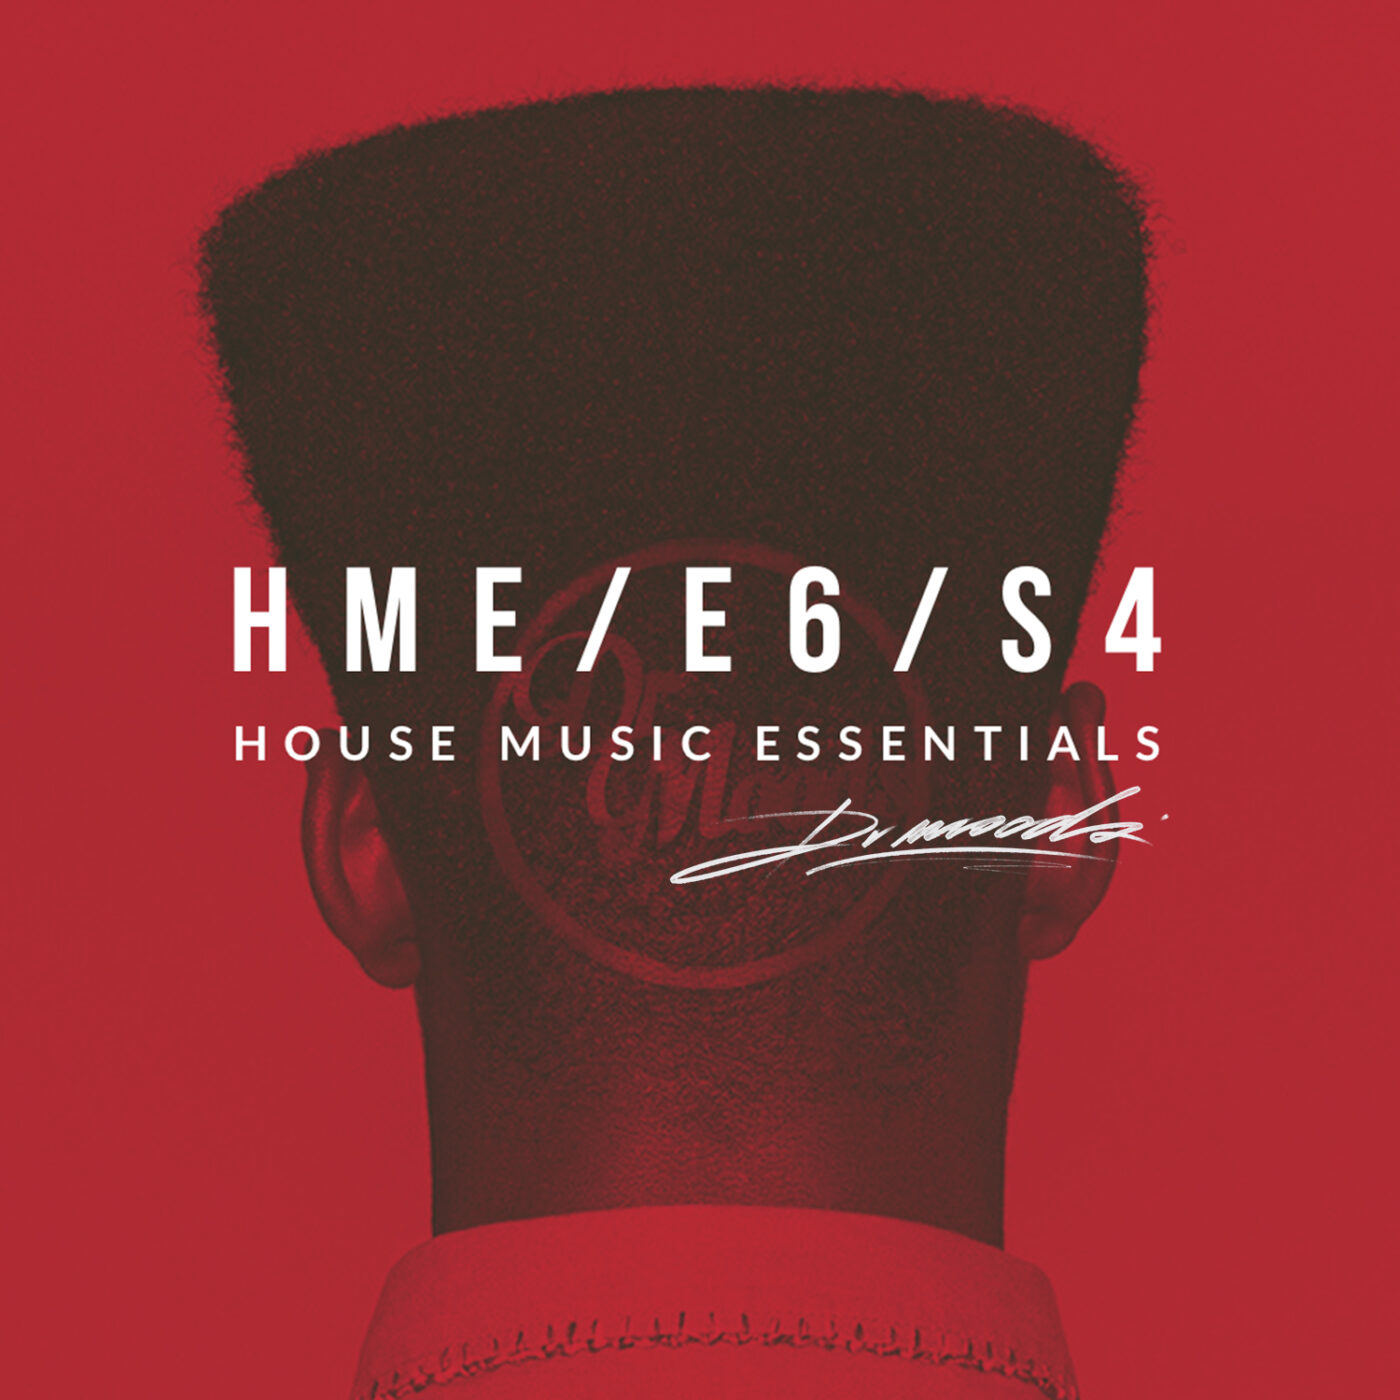 HOUSE MUSIC ESSENTIALS-E6/S4